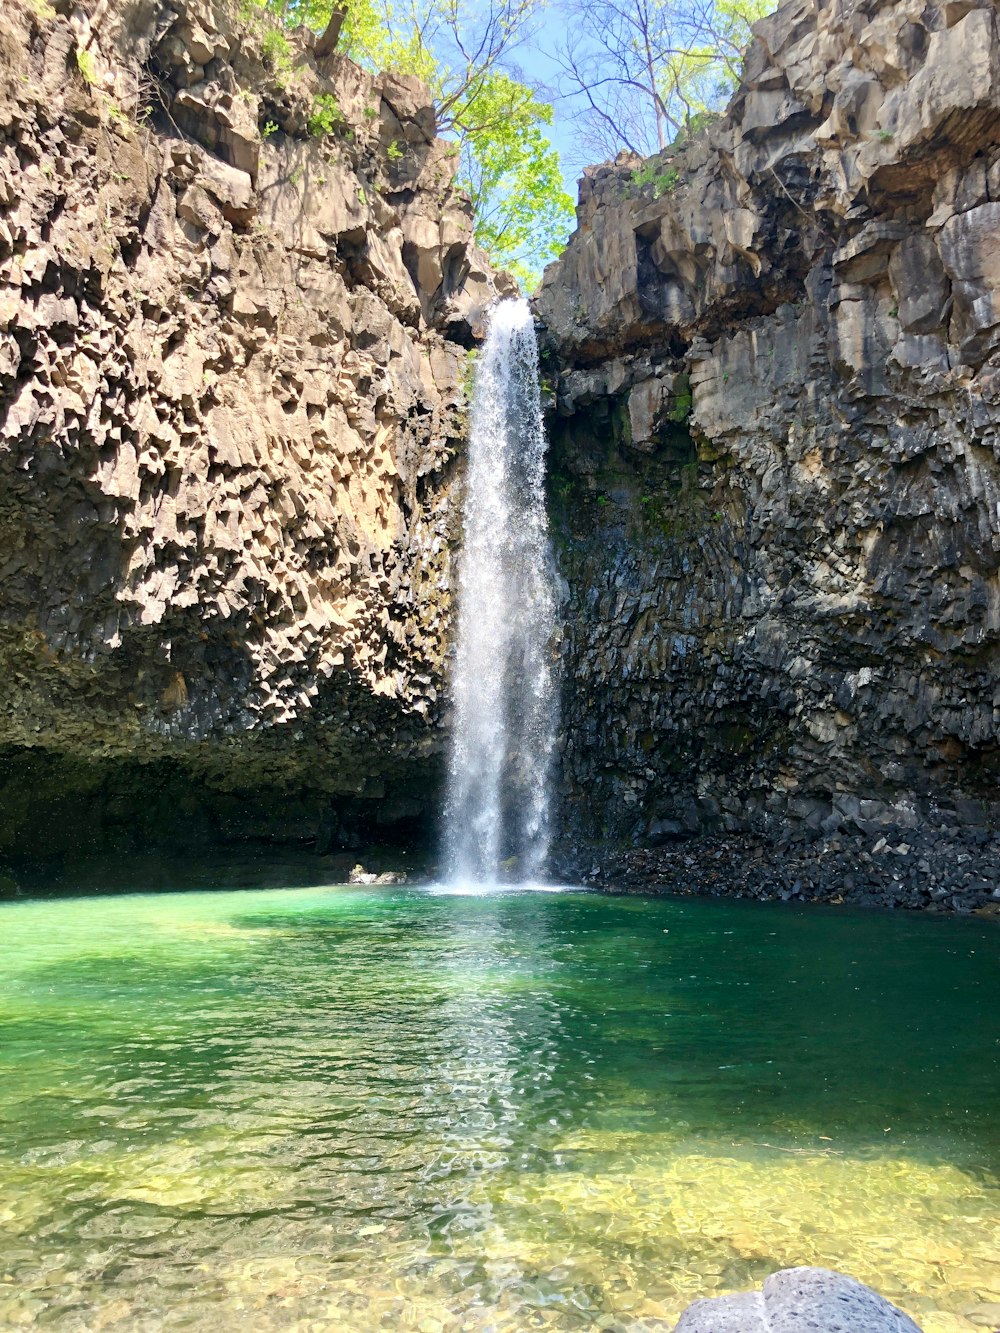 Uma cachoeira é vista no meio de um corpo d'água